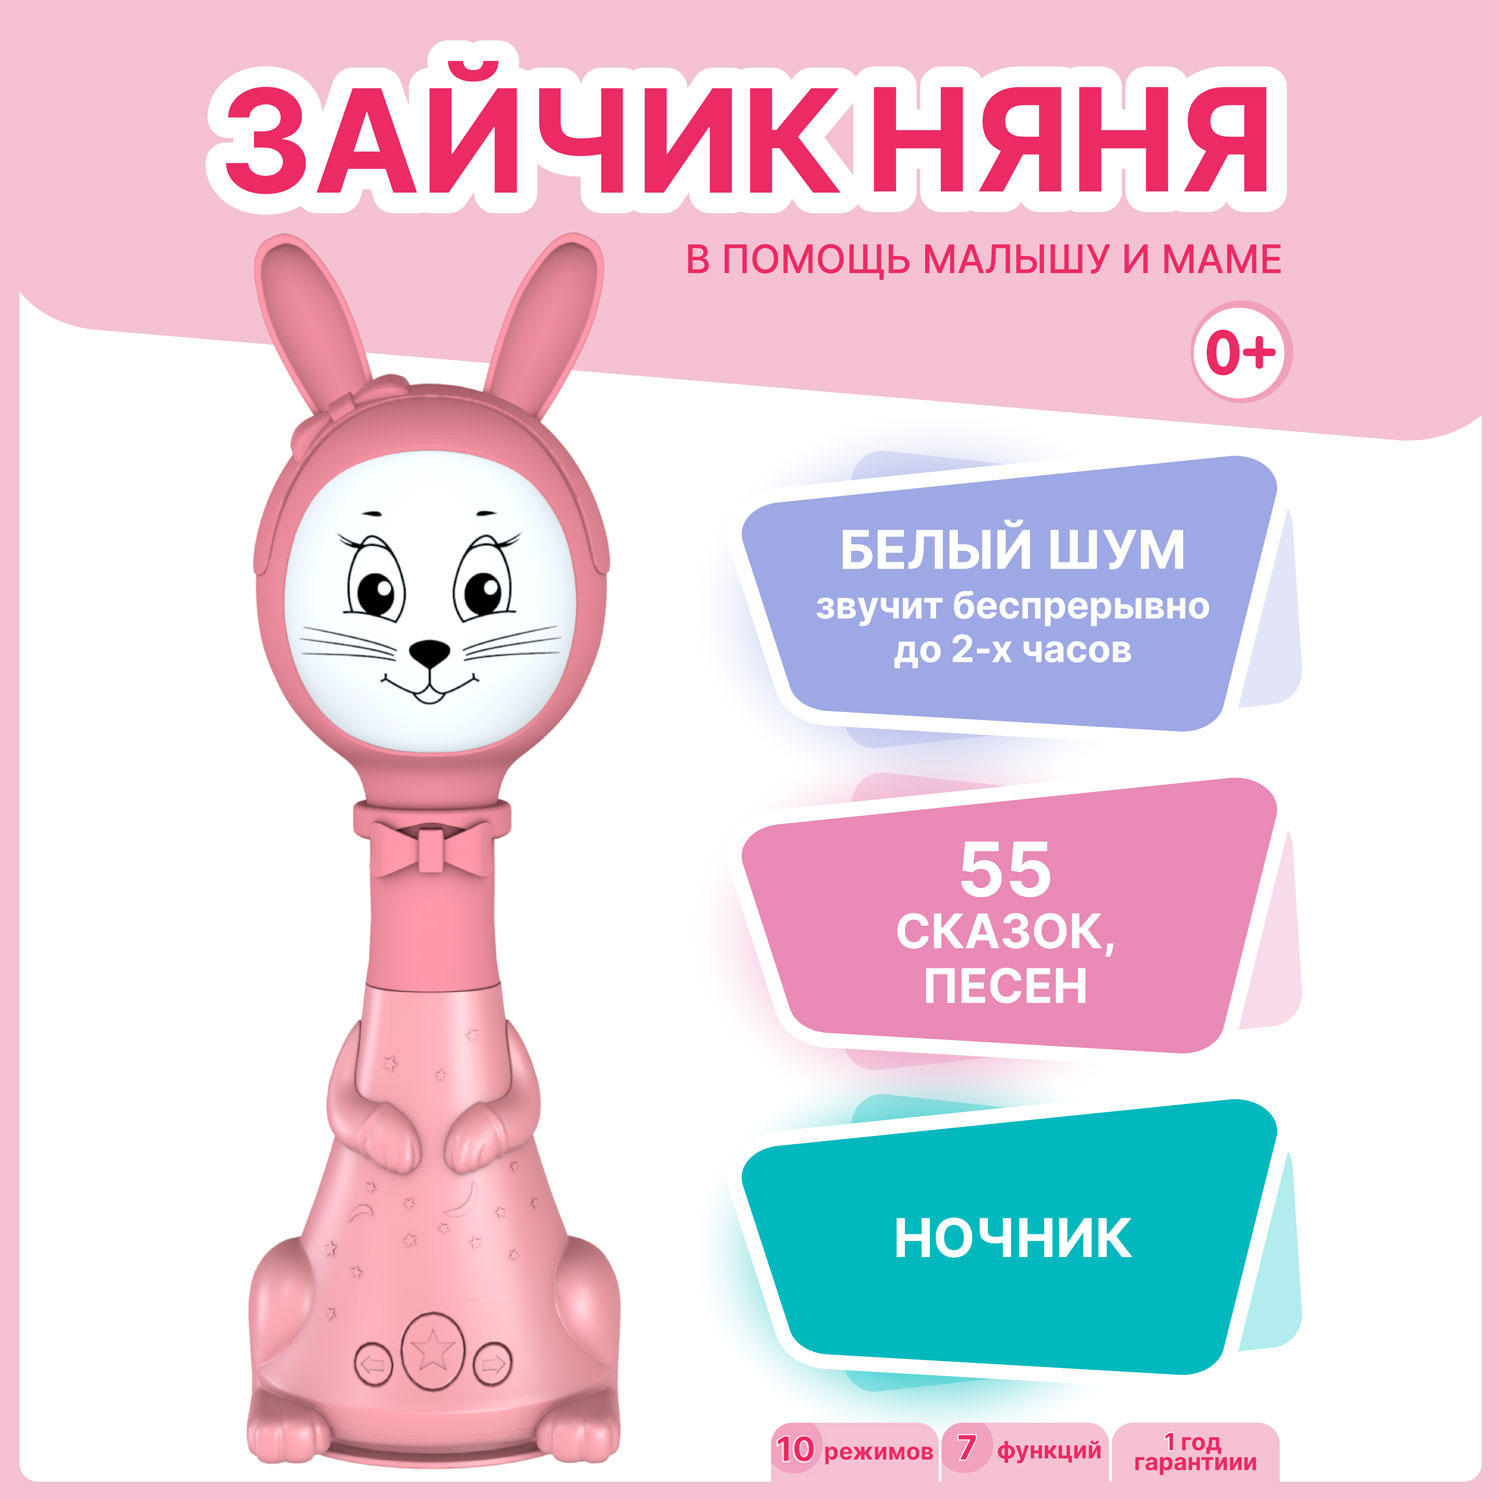 Интерактивная развивающая игрушка для малышей BertToys Зайчик Няня FD125/Розовый интерактивная игрушка berttoys зайчик няня с белым шумом и погремушкой